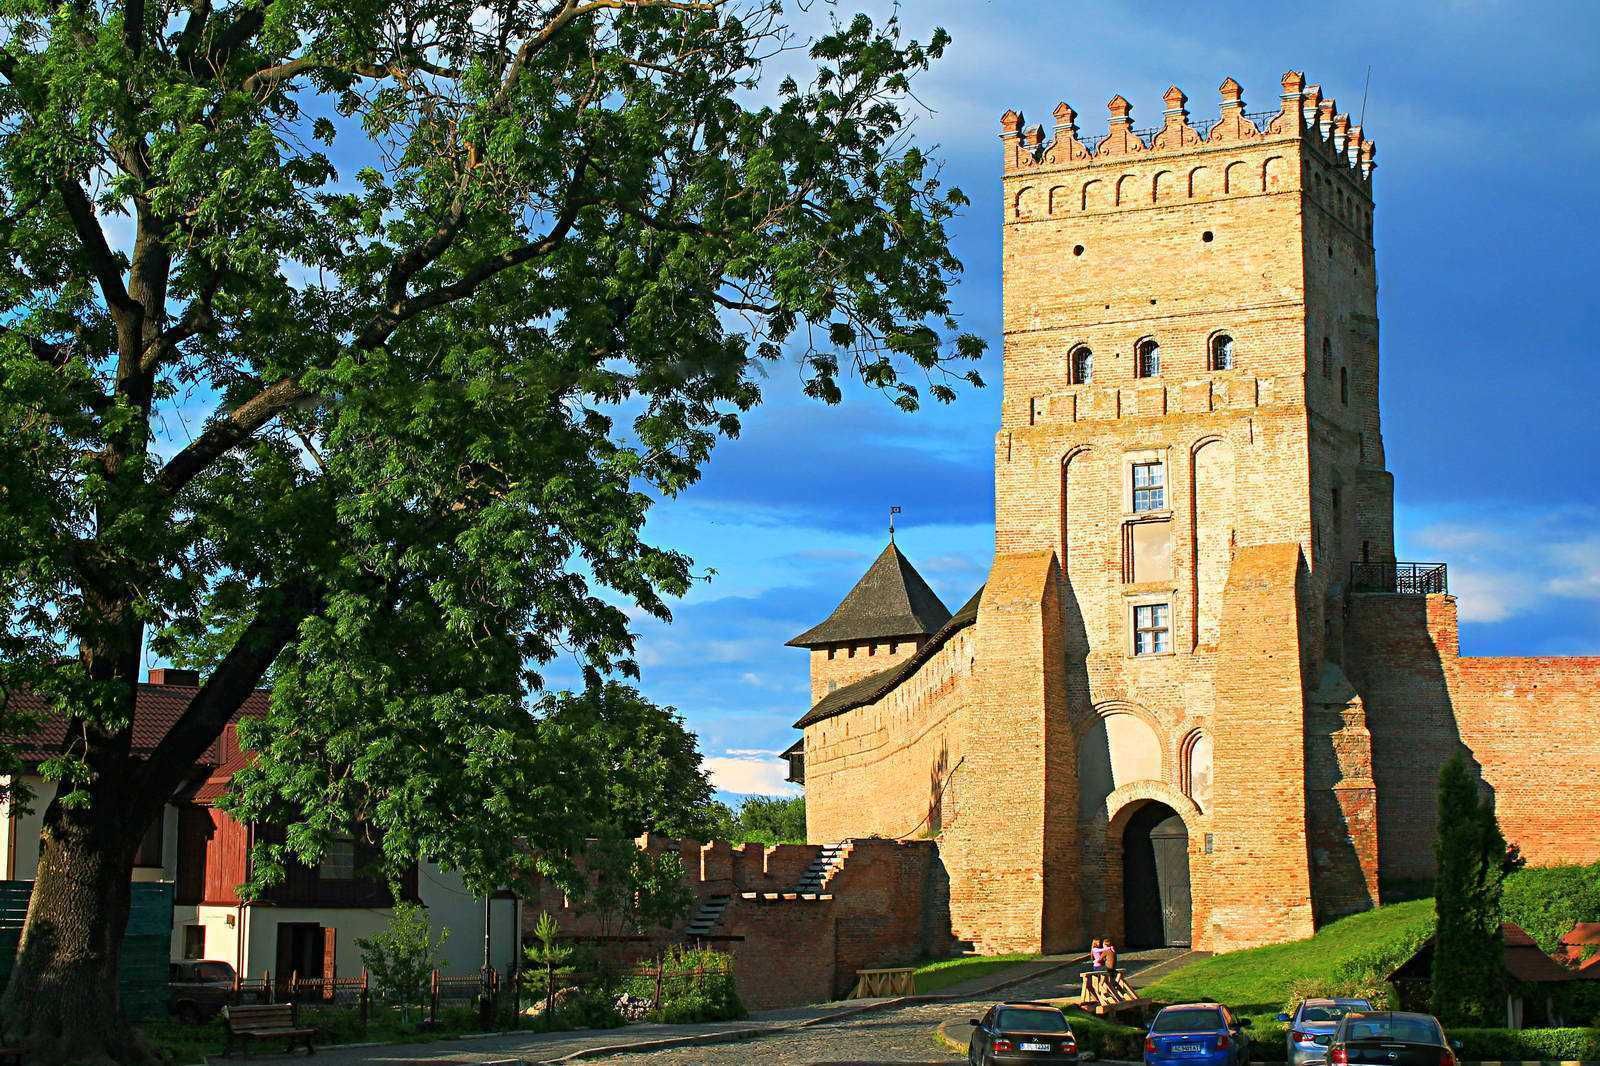 Несмотря на войну, жизнь продолжается: в Луцке возобновляют экскурсии по замку Любарта